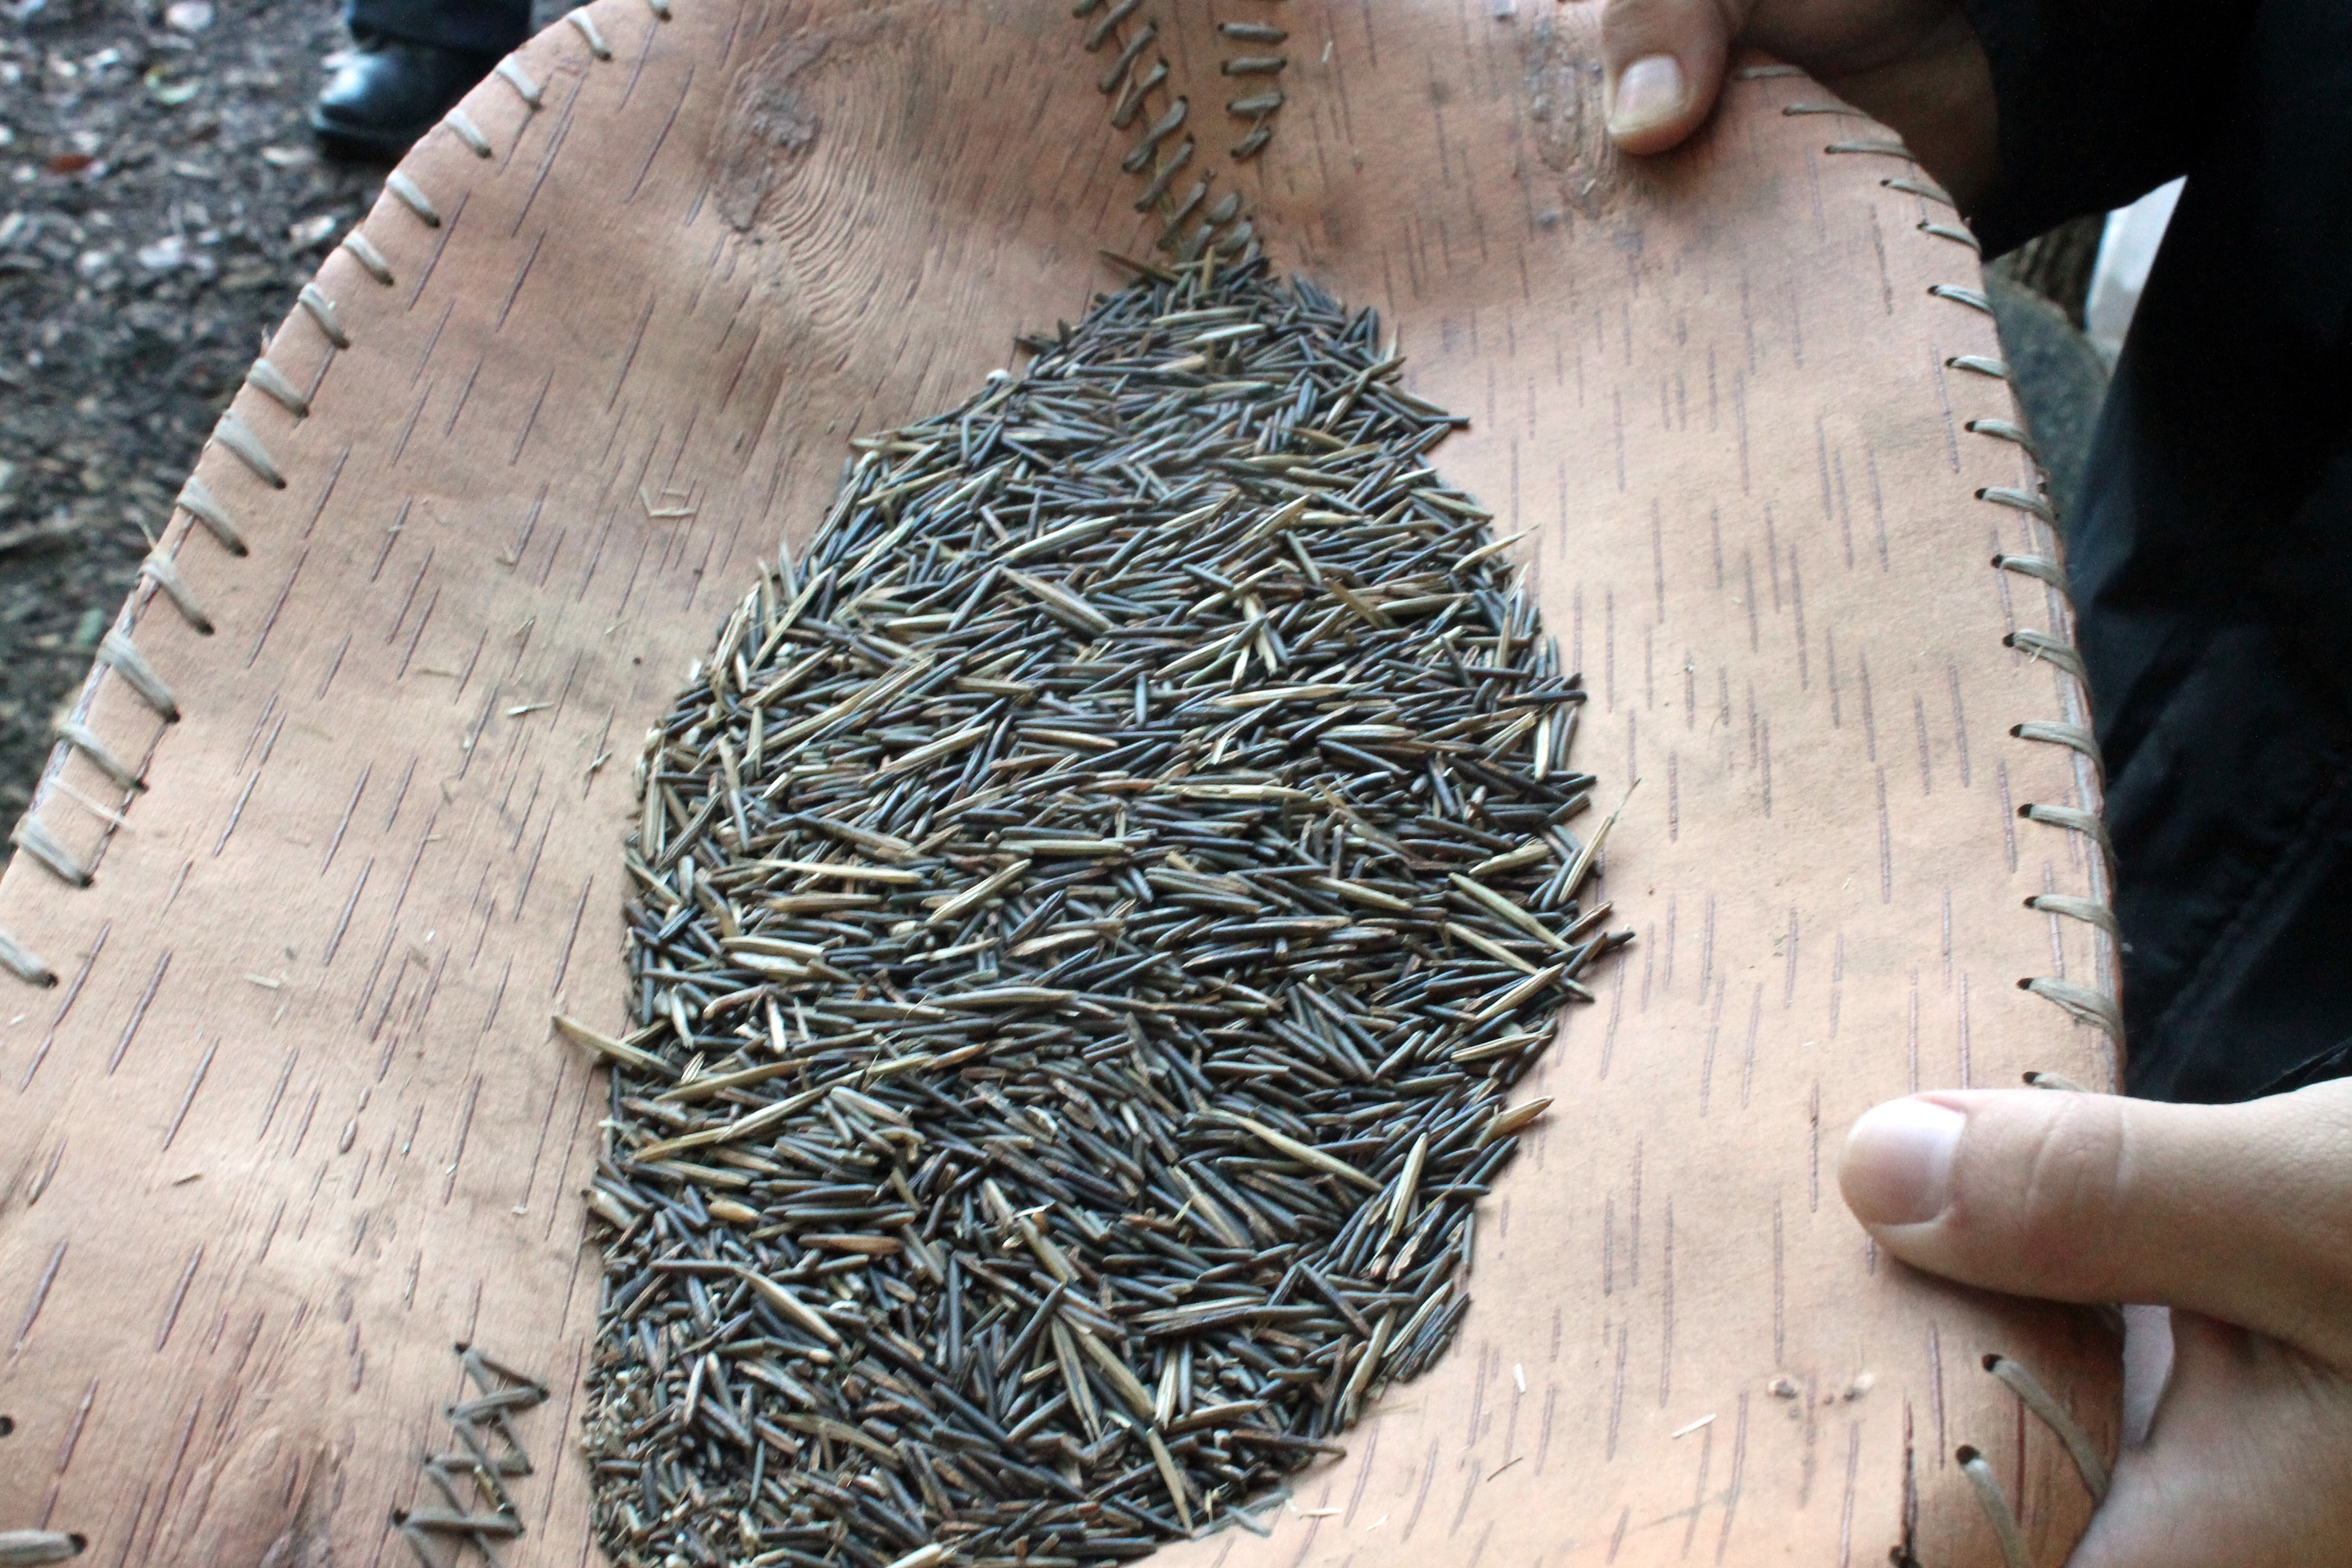 野生米的谷物在浅棕色容器中加工